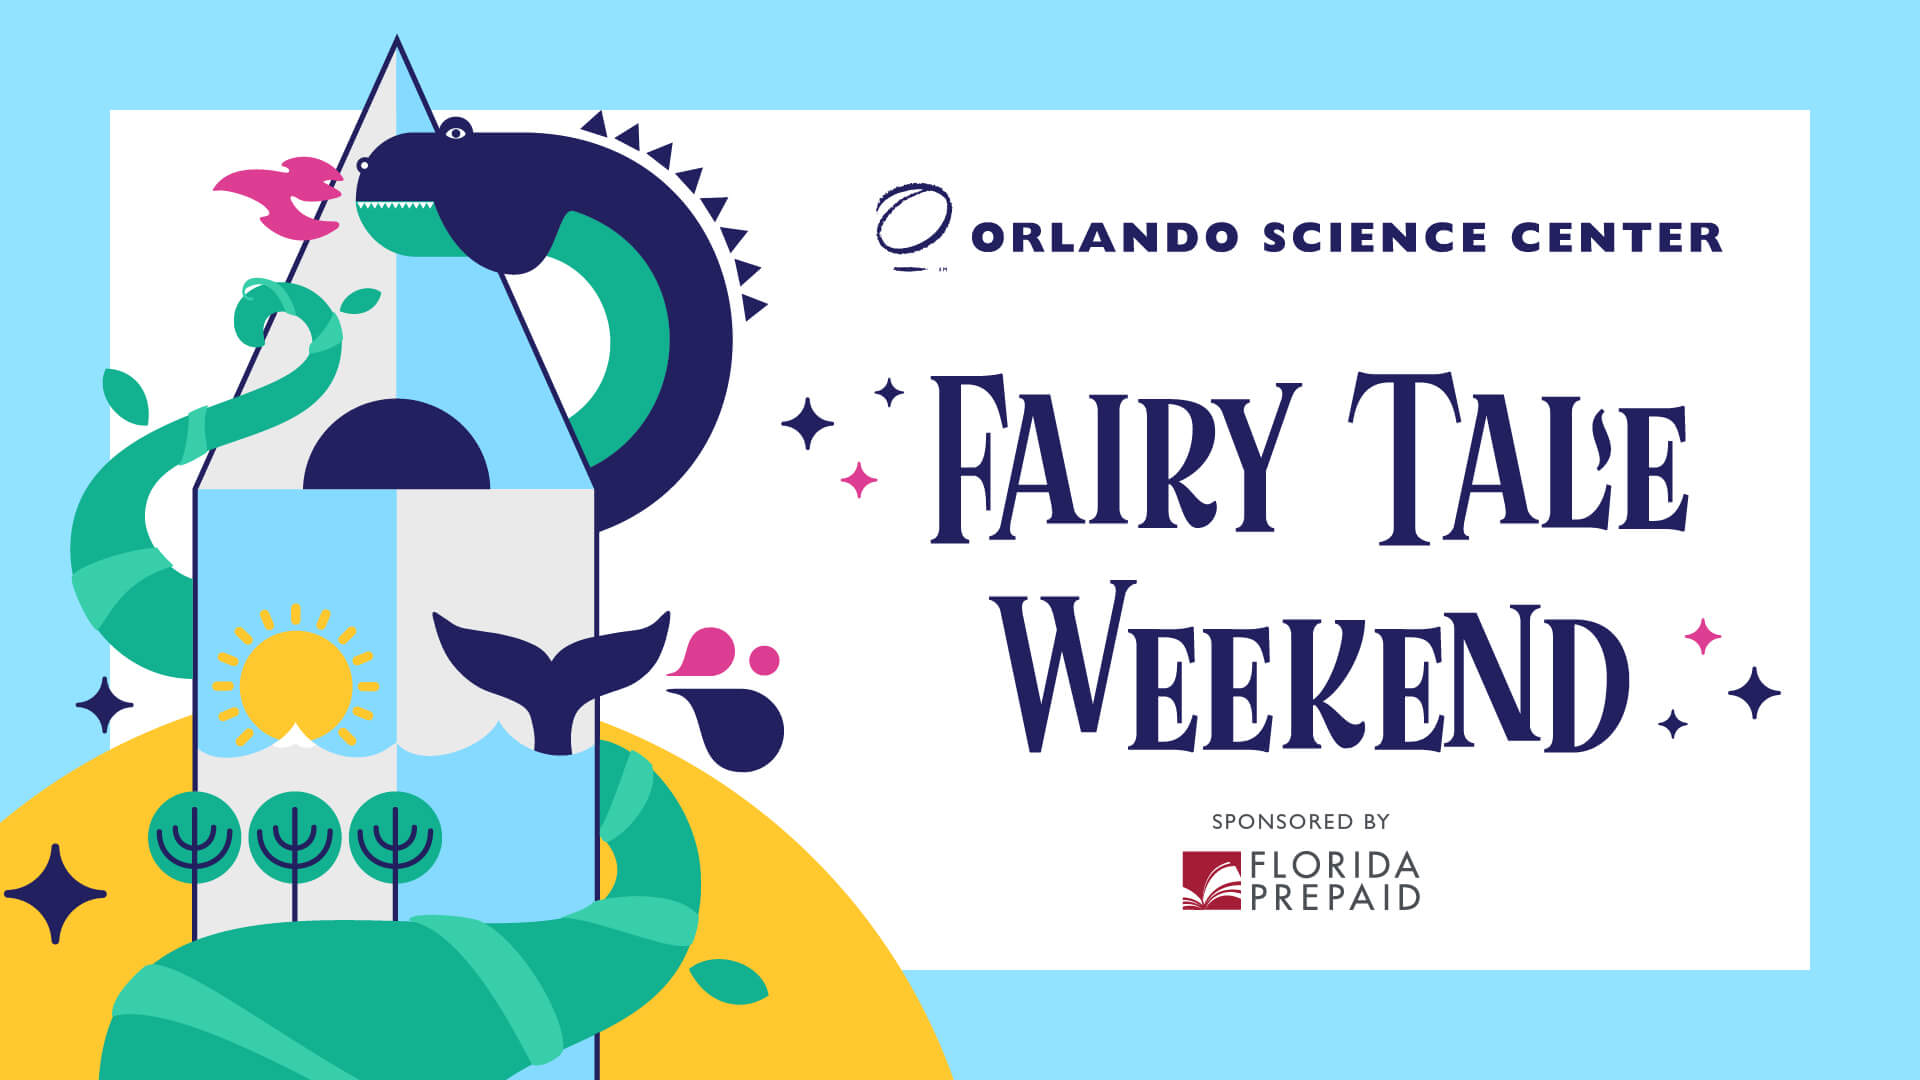 Fairy Tale Weekend presented by Florida Prepaid